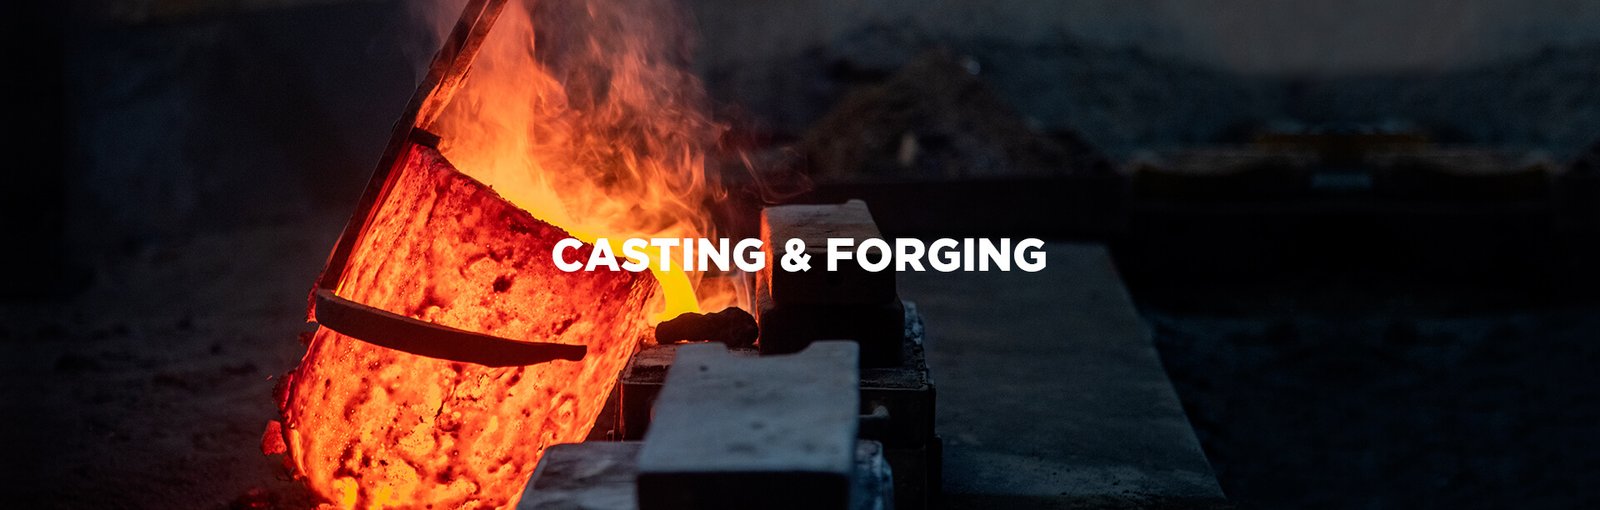 casting-forging-banner